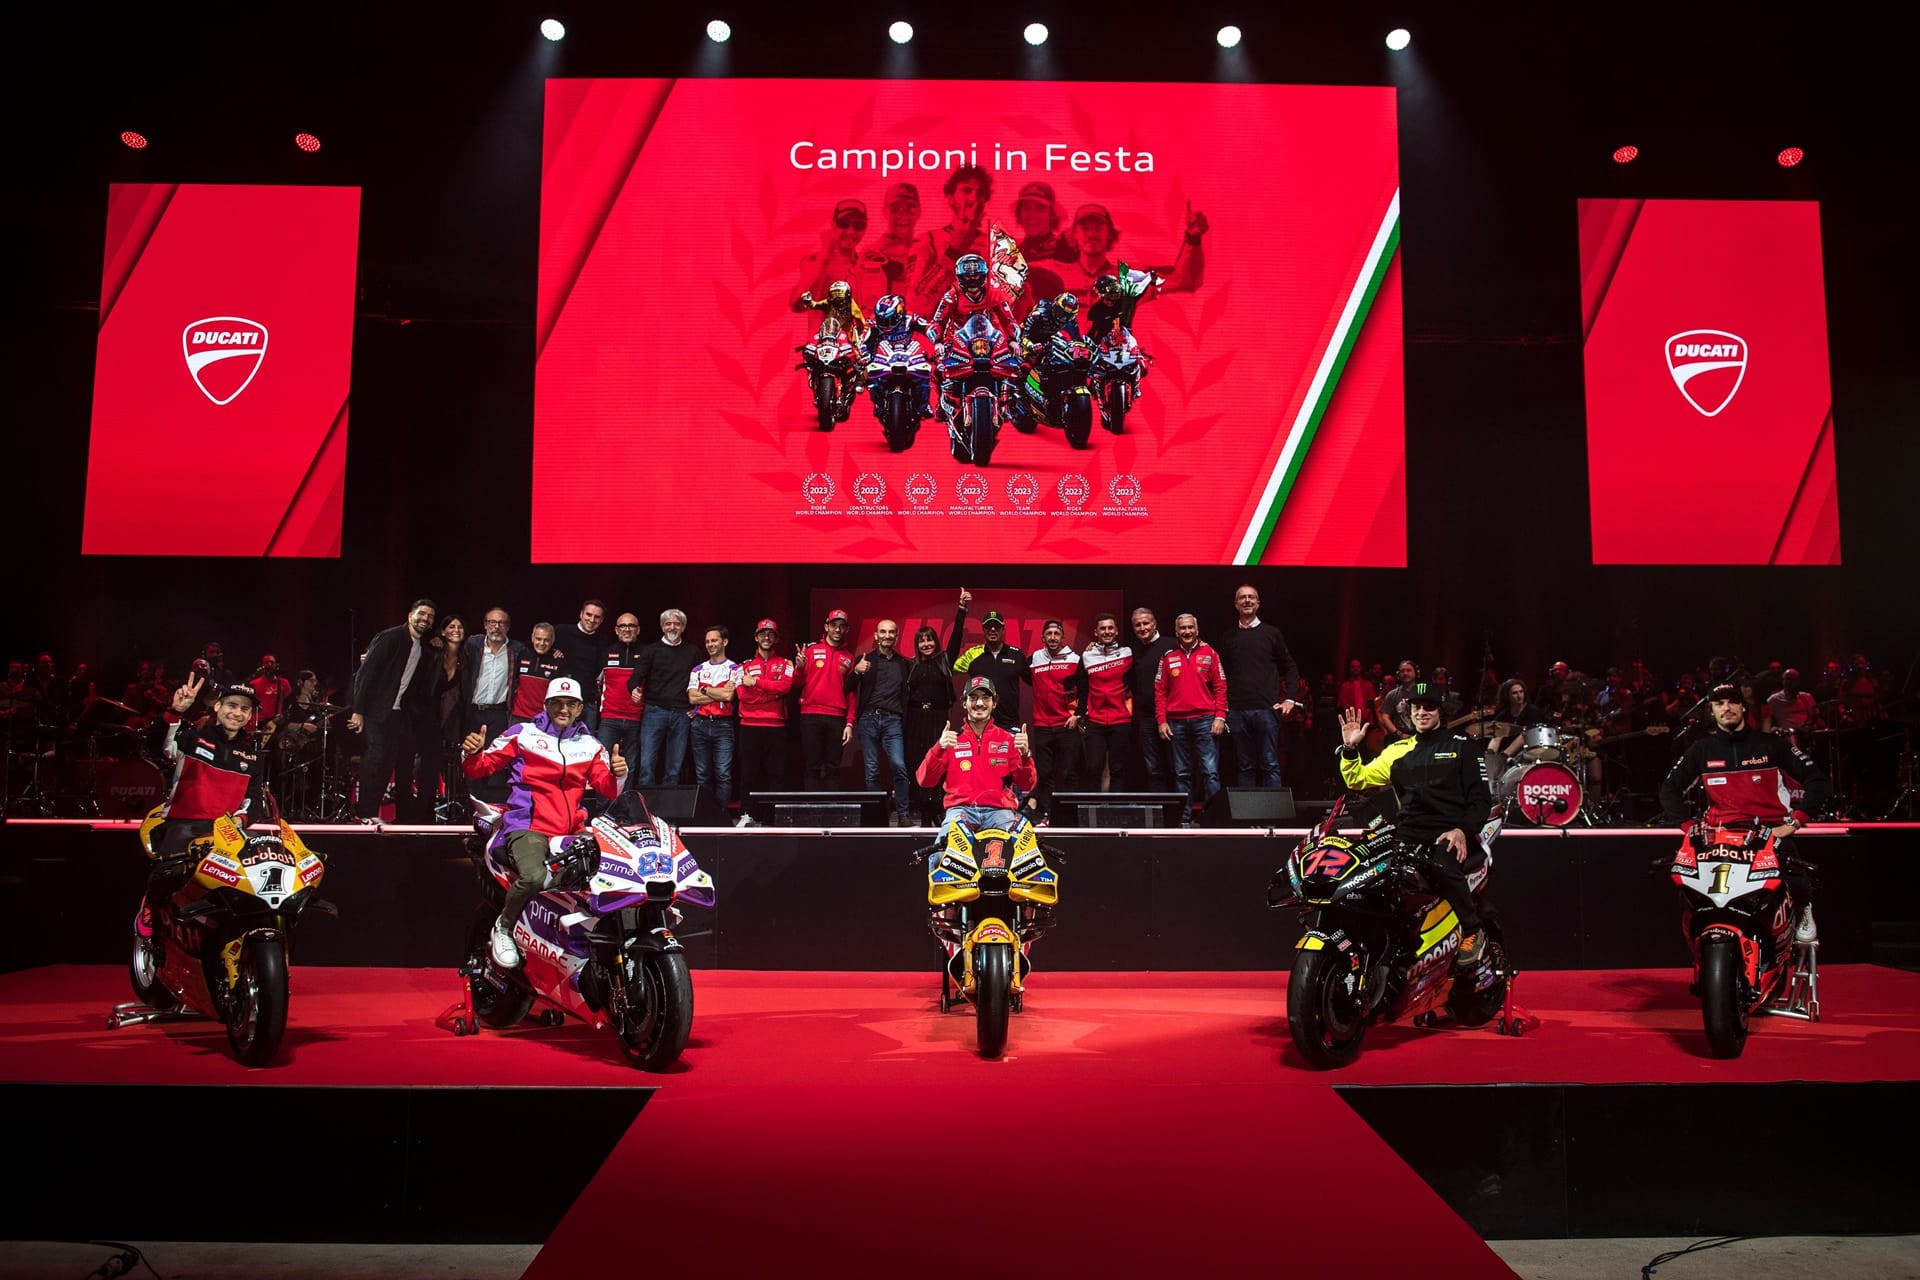 "Campioni in Festa": Celebrando el dominio de Ducati dentro de la competición